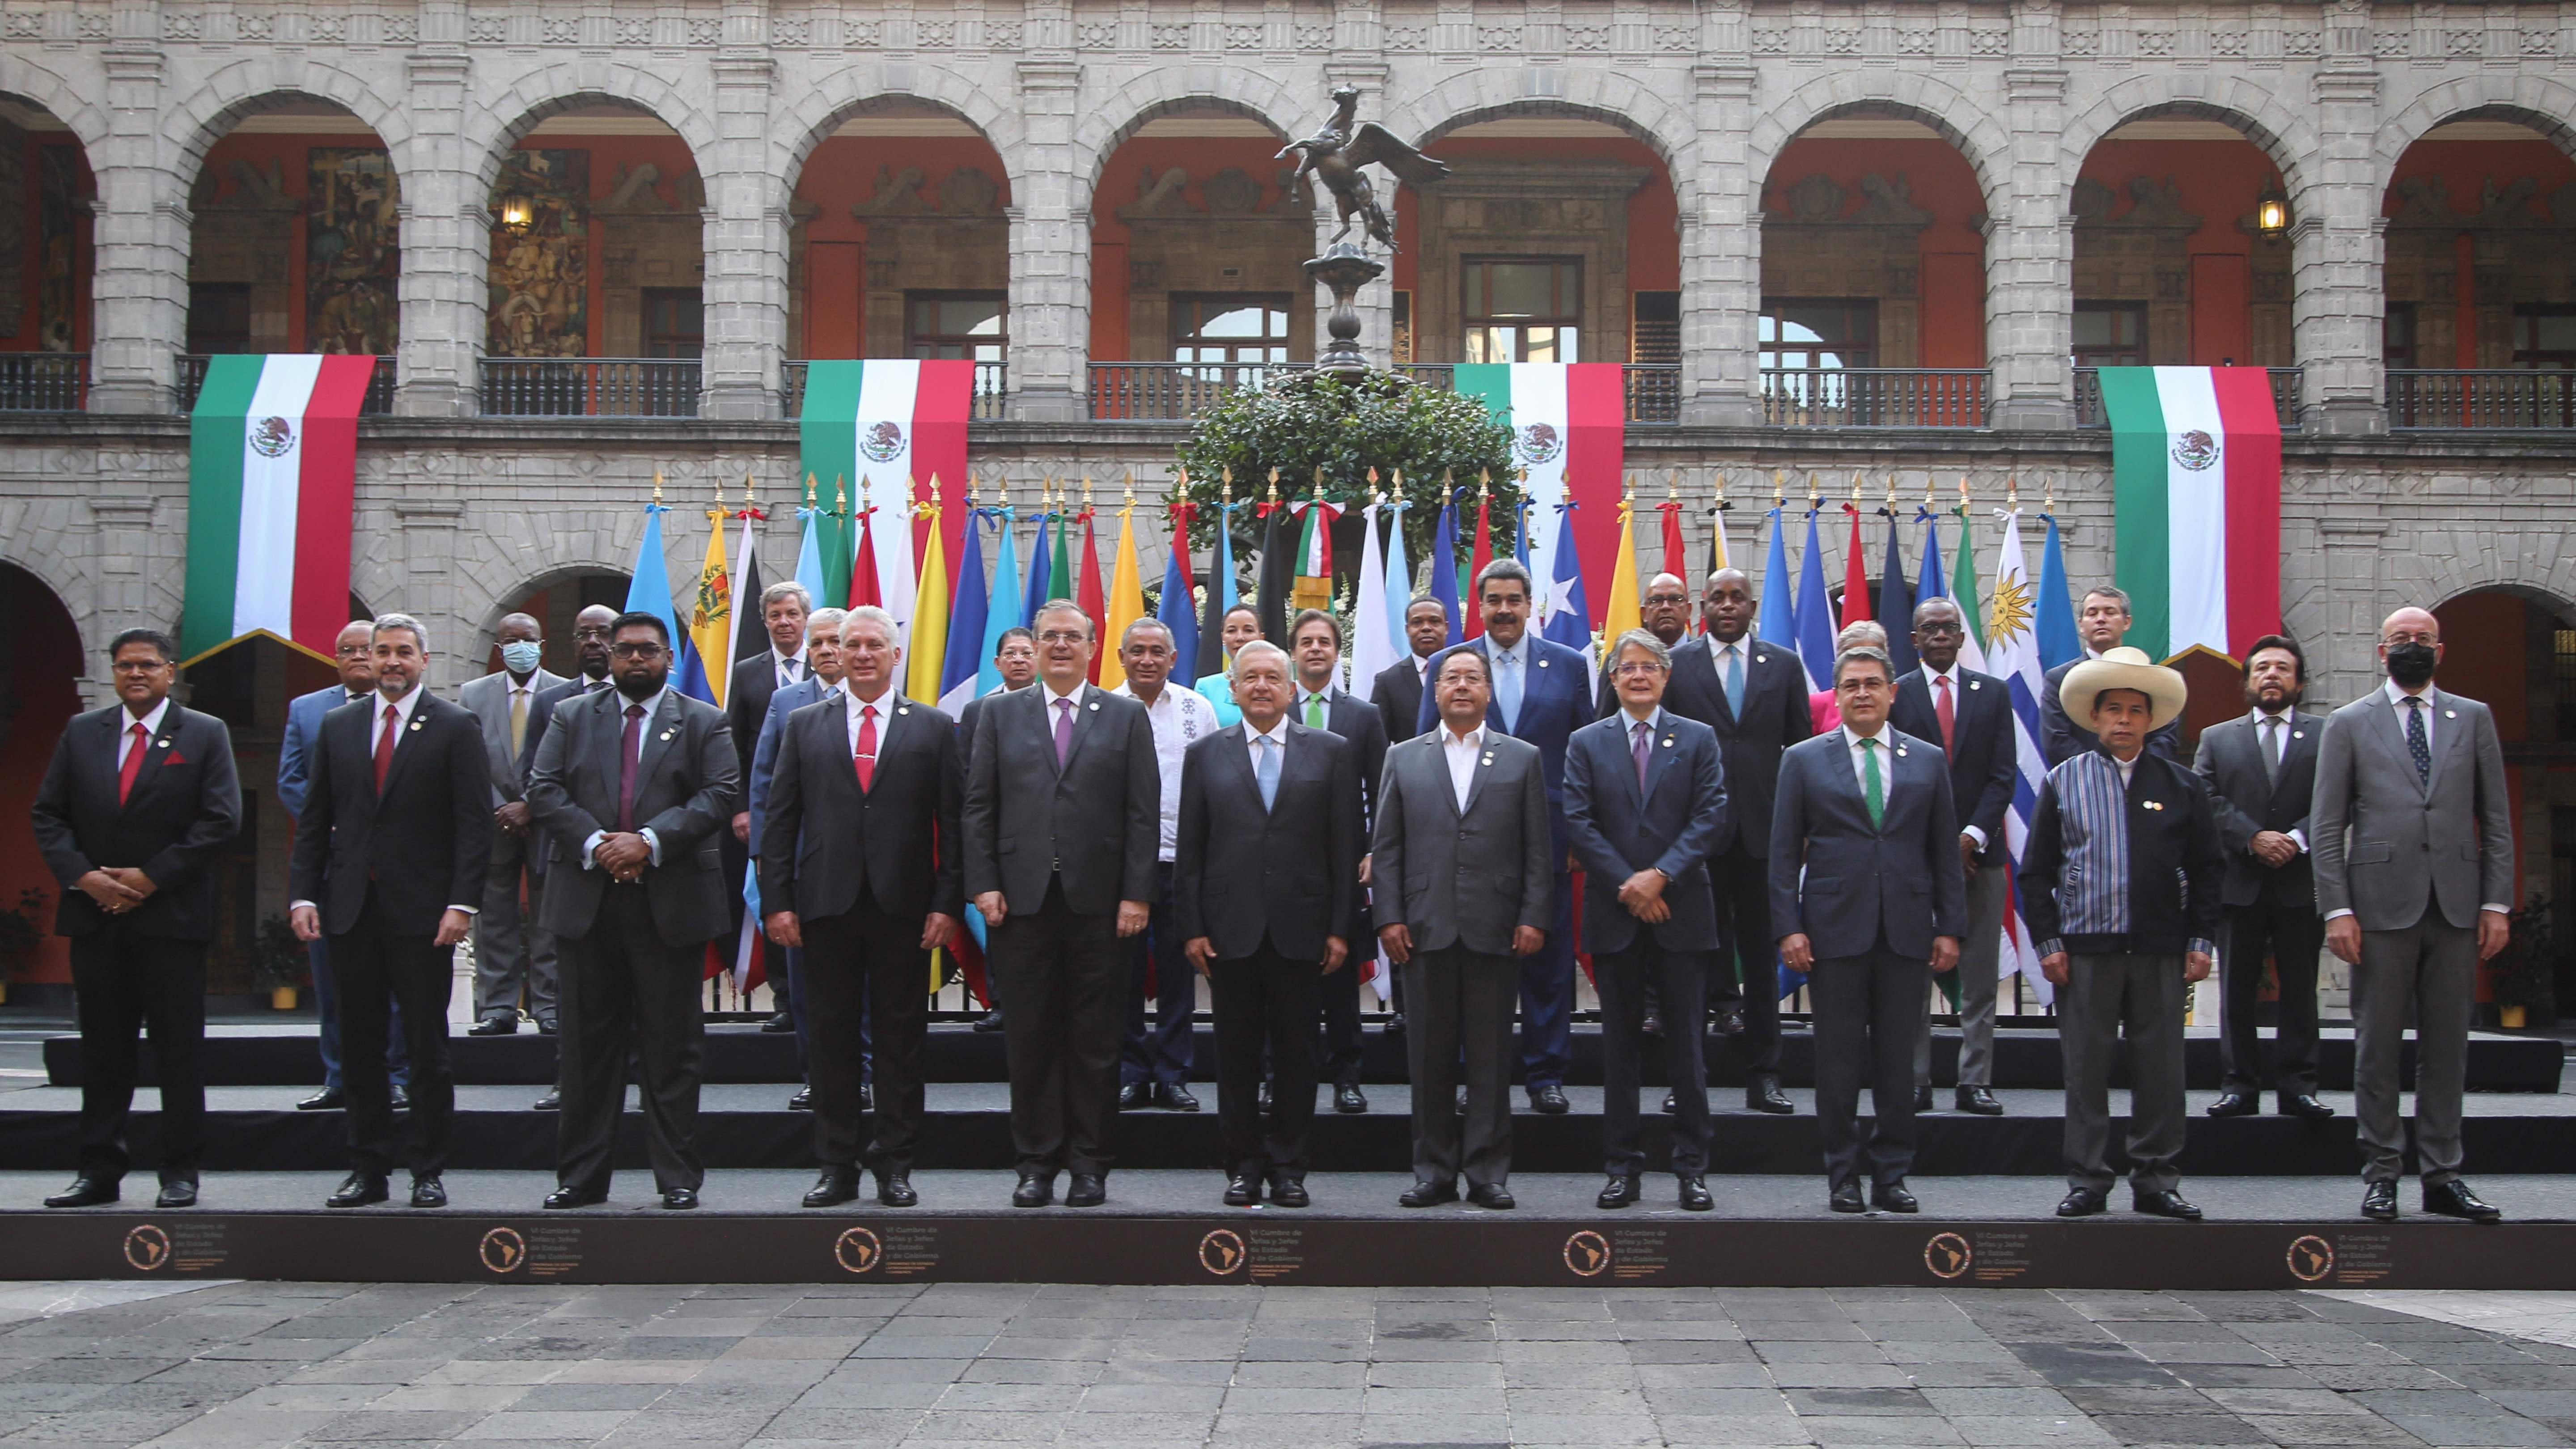 Imagen del folleto difundido por la Presidencia de México que muestra a los presidentes y representantes posando para la foto familiar de la Sexta Cumbre de la Comunidad de Estados Latinoamericanos y Caribeños (CELAC) en el Palacio Nacional de México, en la Ciudad de México el 18 de septiembre de 2021. (Foto Prensa Libre: AFP)